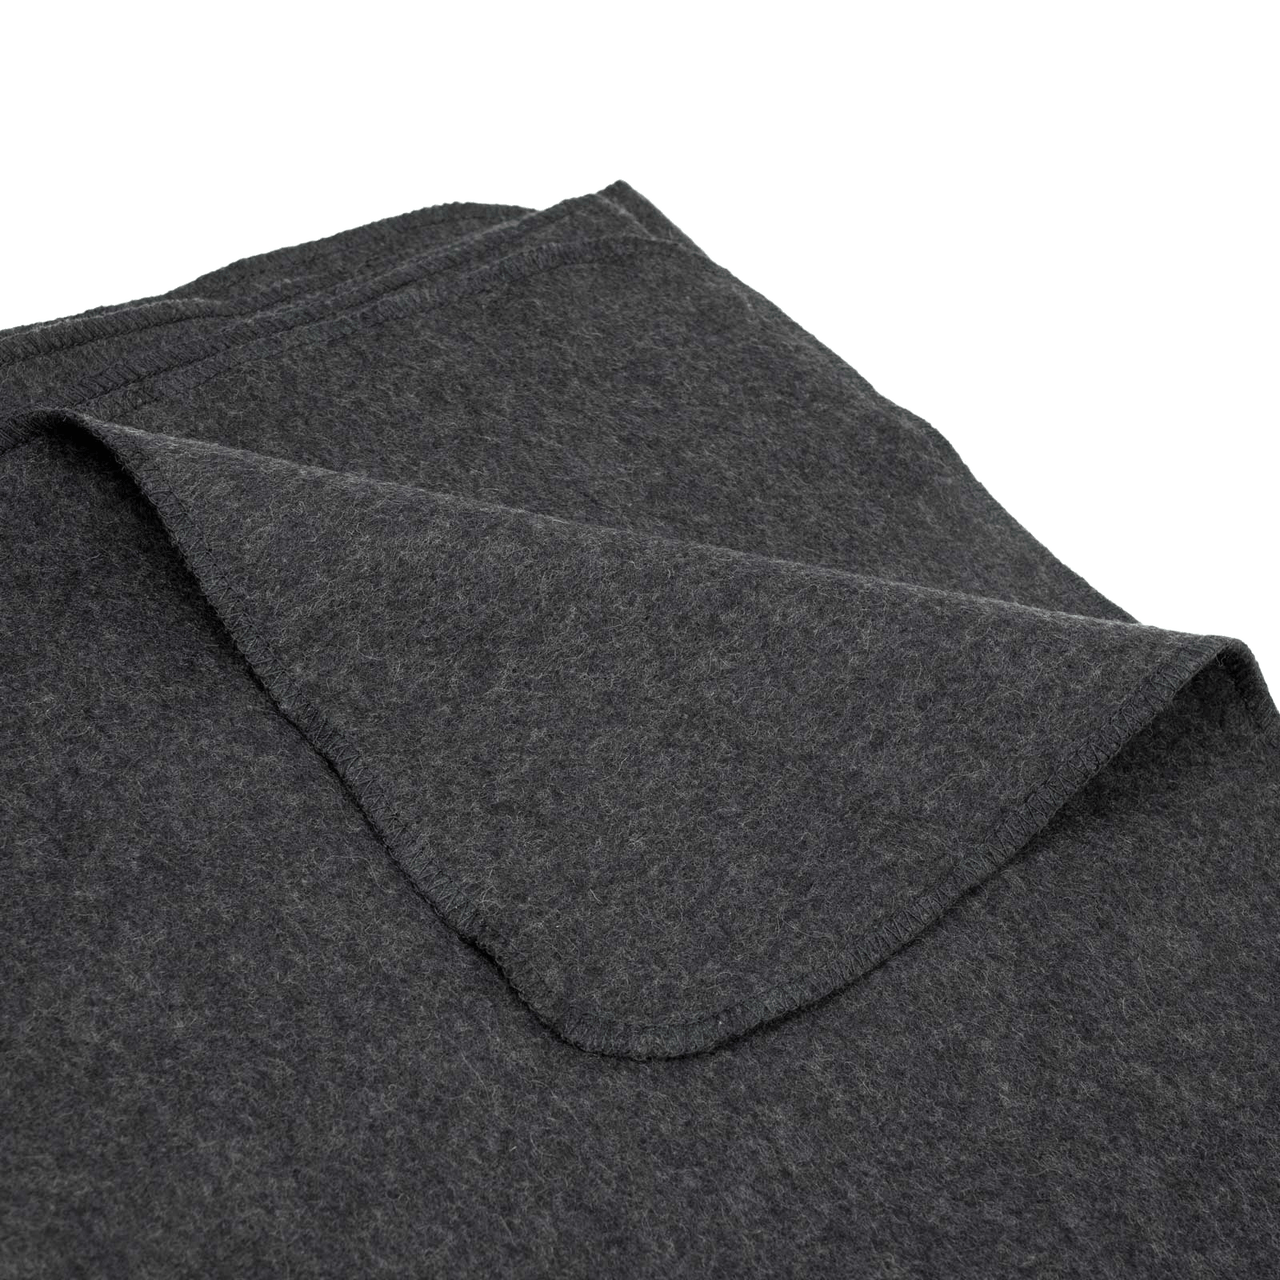 Classic Asphalt Grey 40% Wool Blanket | 62 in x 84 in | GI HAWK